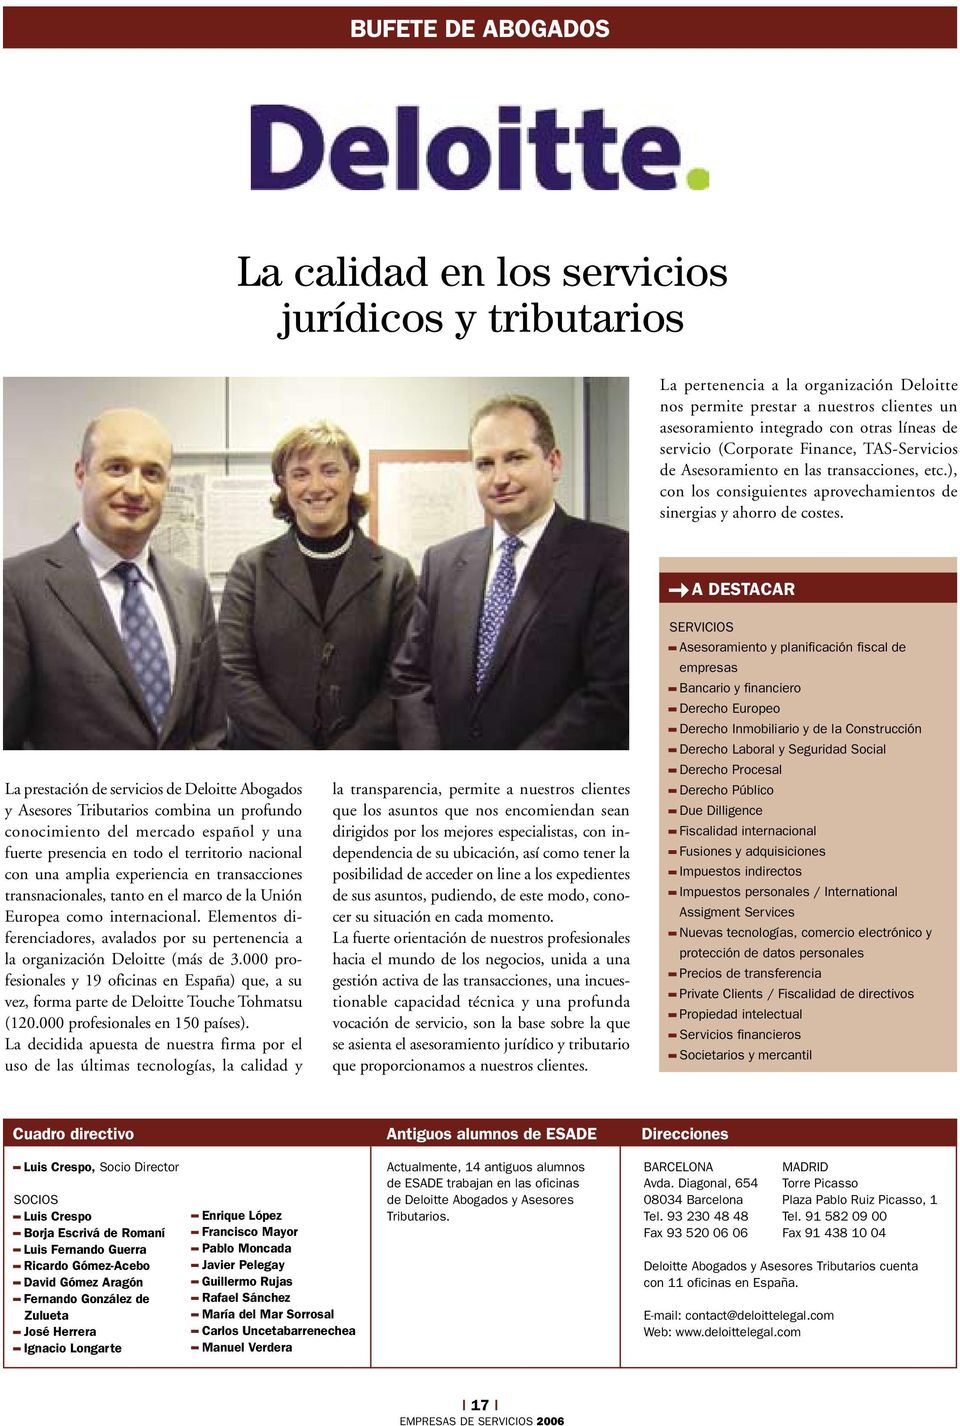 La prestación de servicios de Deloitte Abogados y Asesores Tributarios combina un profundo conocimiento del mercado español y una fuerte presencia en todo el territorio nacional con una amplia